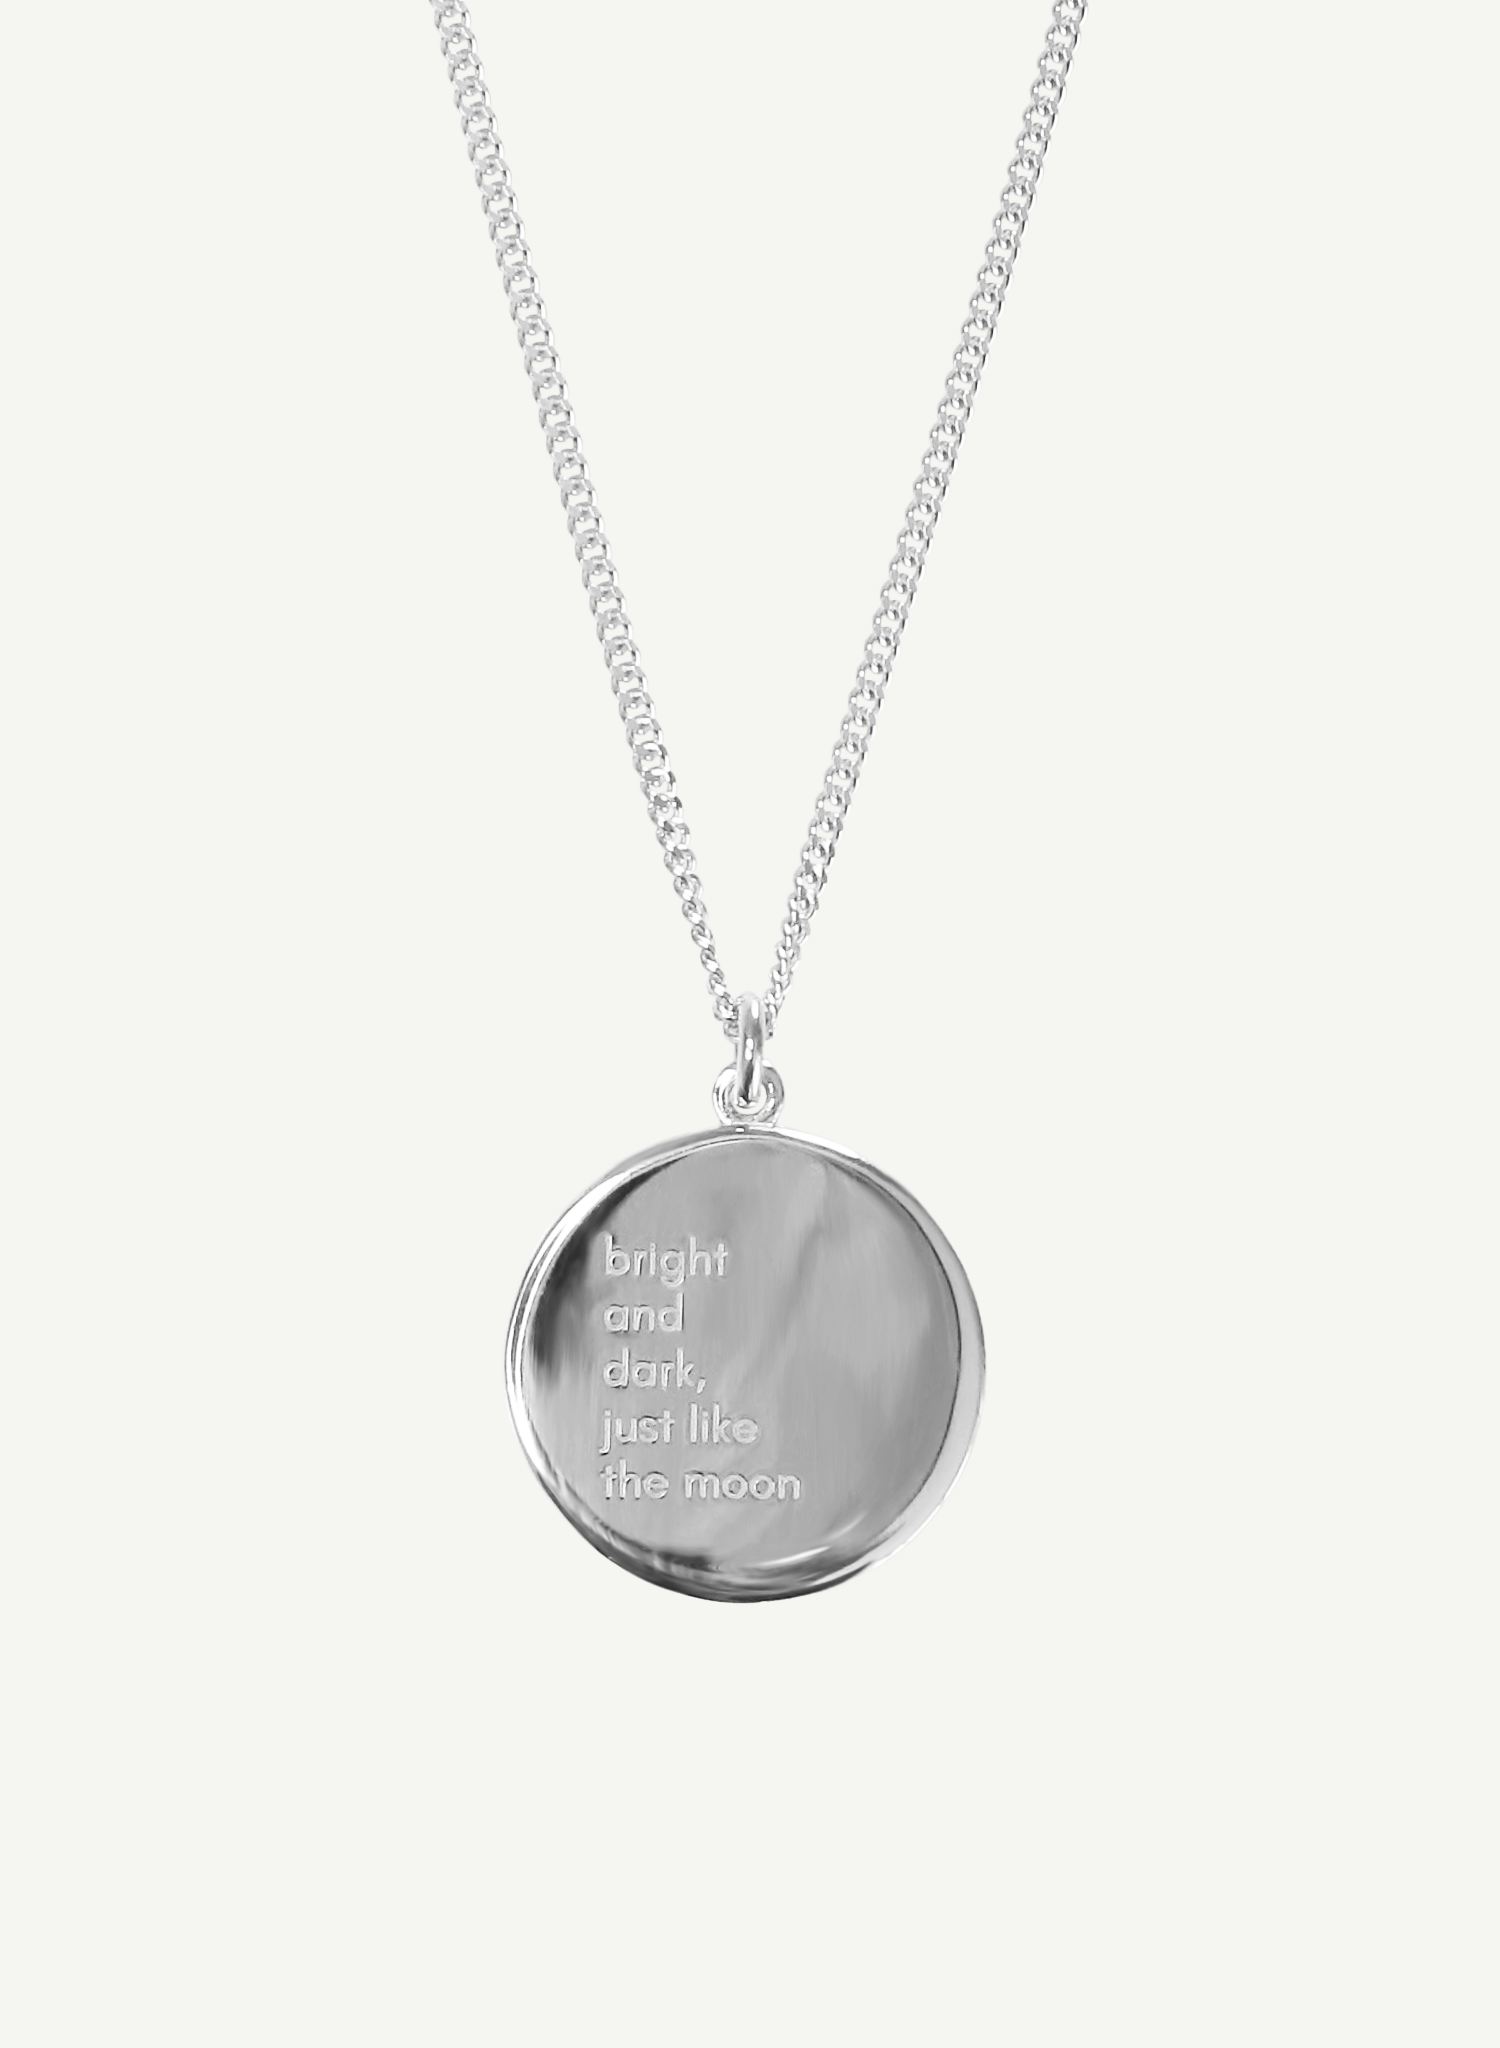 collier-demi-lune-argent-bijou-femme-madeinfrance-fait-en-france-Bento-jewelry